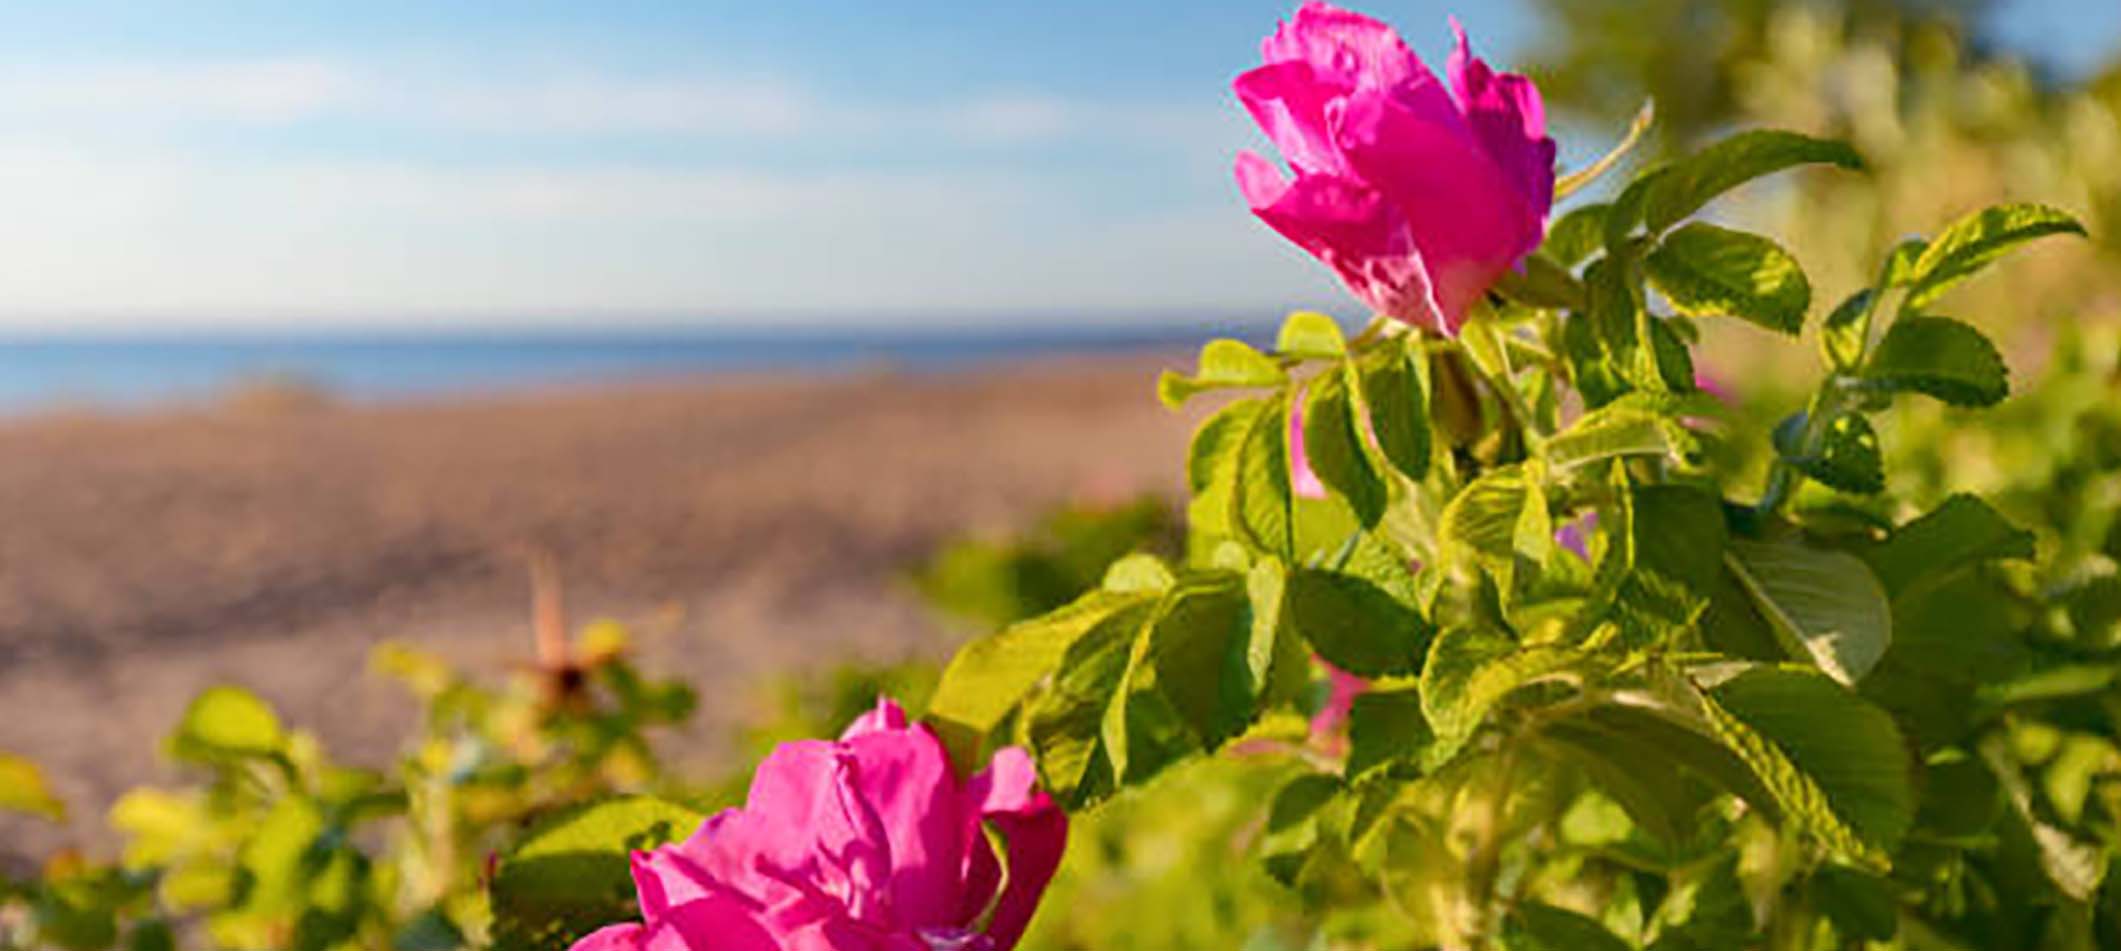 Growing Roses Along The Orange Coast